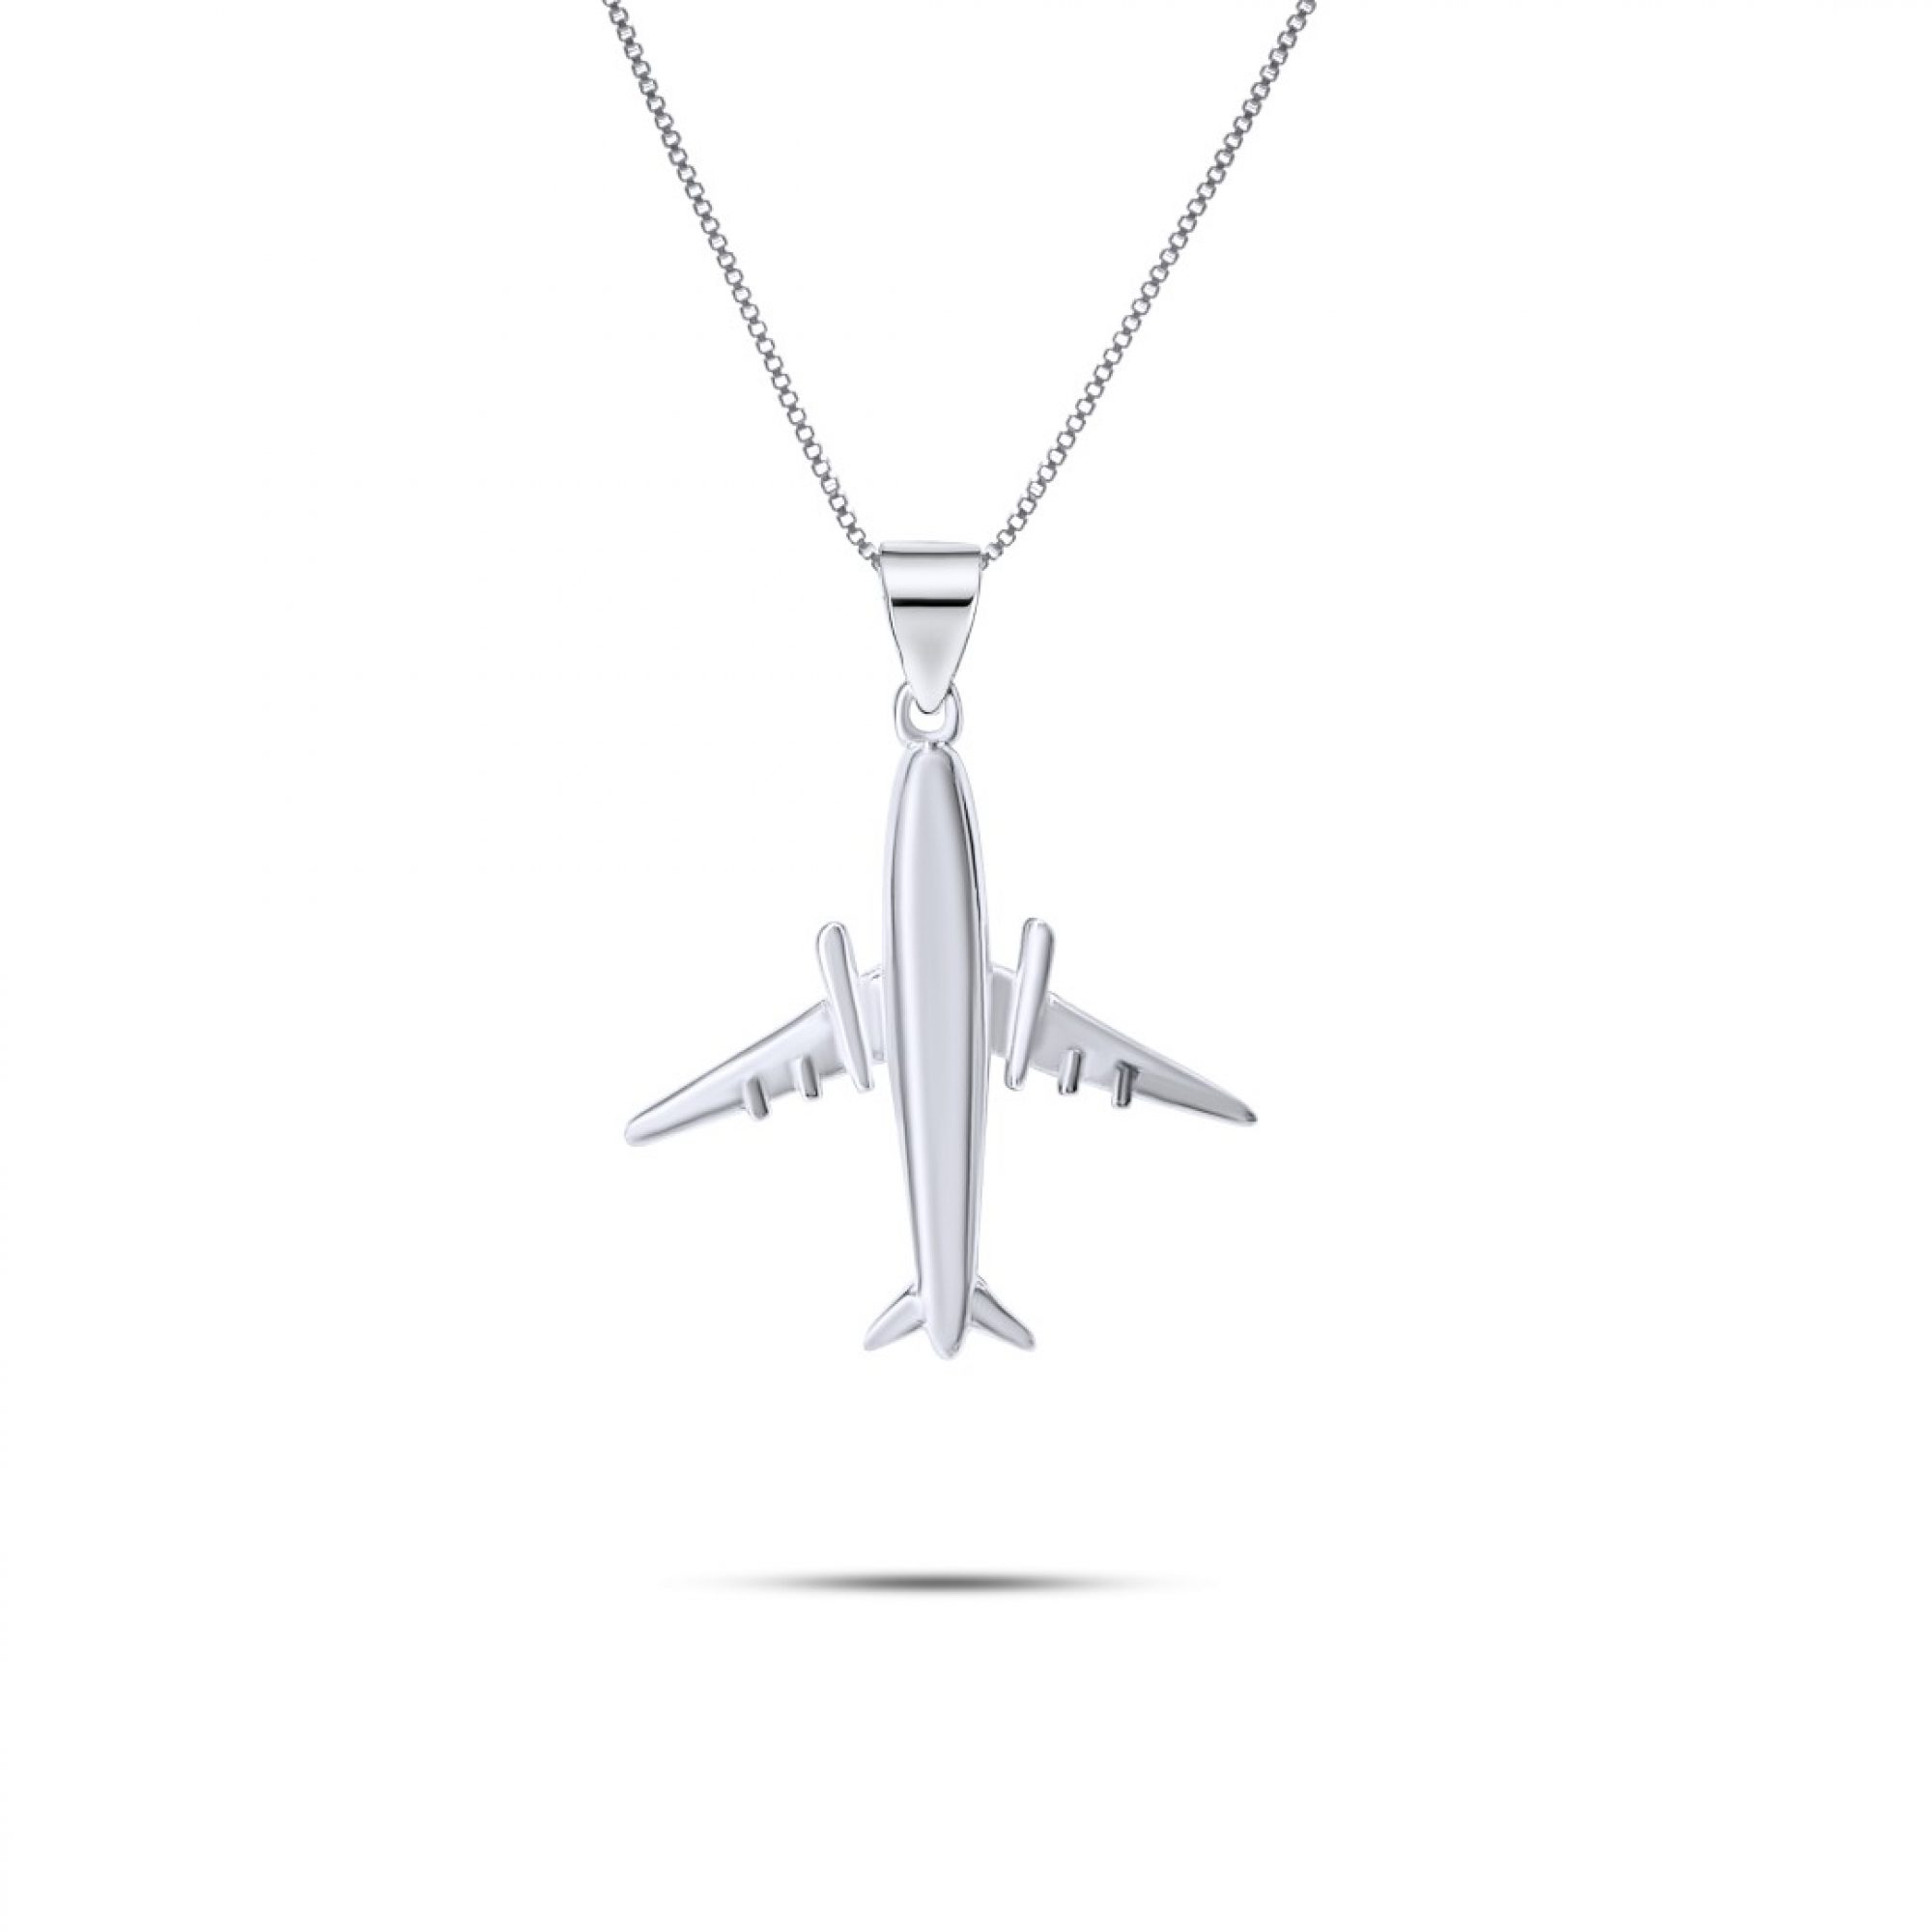 Aeroplane necklace with zircon stones